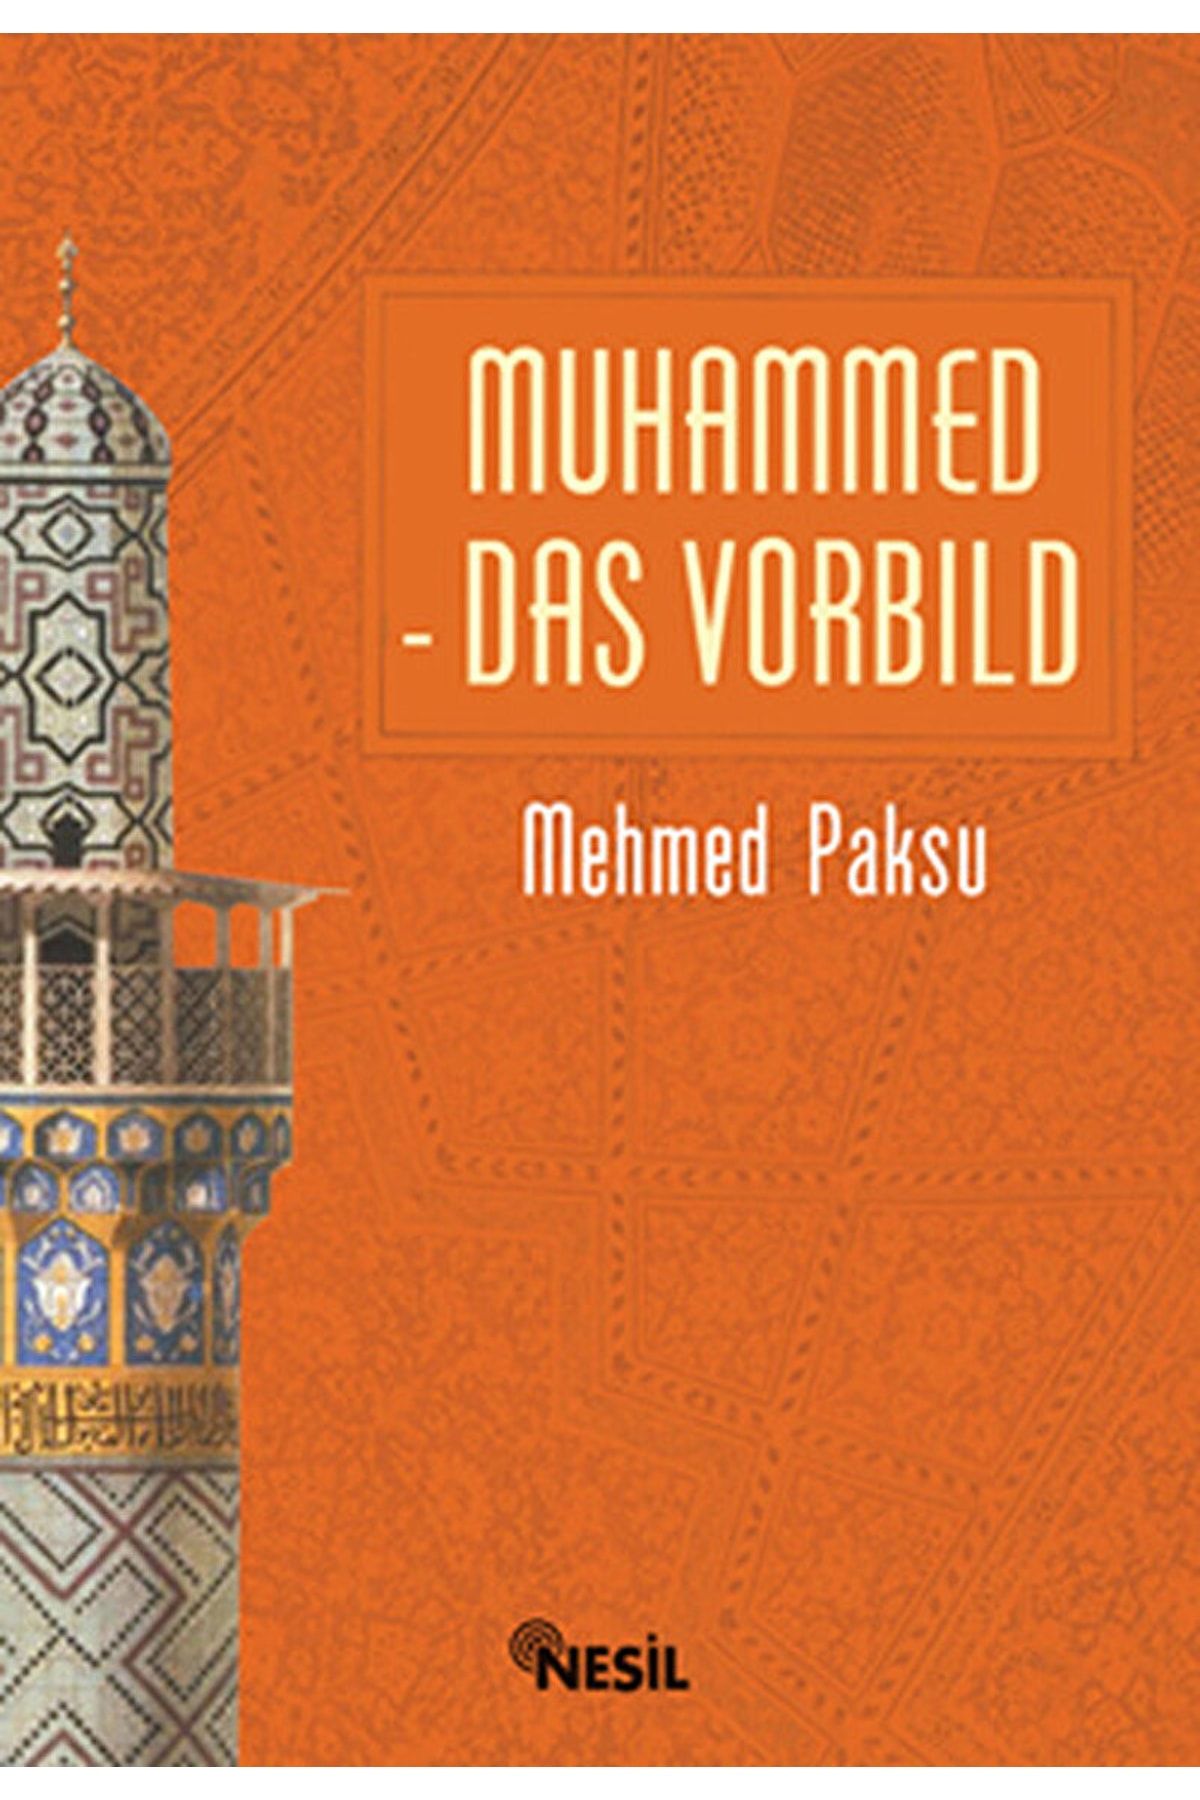 Nesil Yayınları Muhammed Das Vorbild / Mehmed Paksu / / 9799752690645